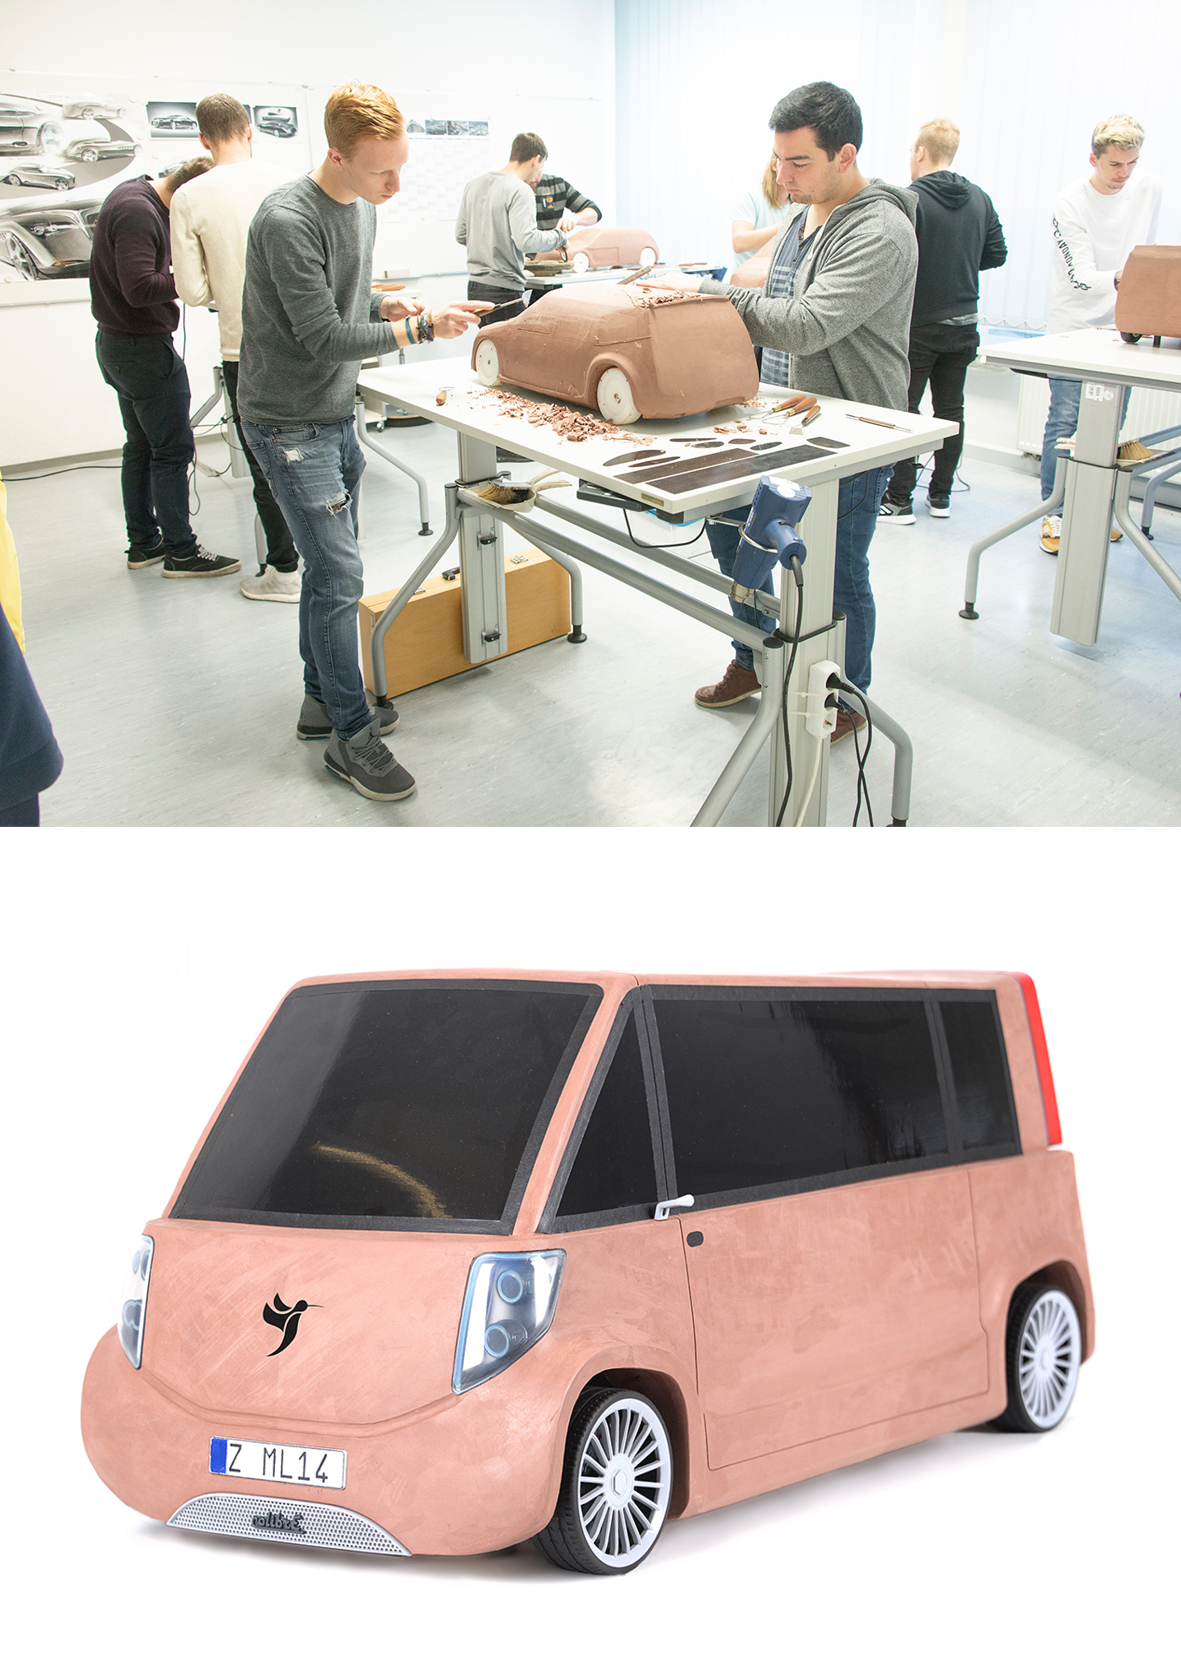 Foto: Studierende arbeiten an einem Clay-Modell des Fahrzeugs. Im zweiten Bildausschnitt ist das Fahrzeug "ColibrE" als Clay-Modell zu sehen. Das Fahrzeug ähnelt einem Kleinbus und besitzt zwei große seitliche Schiebetüren. 